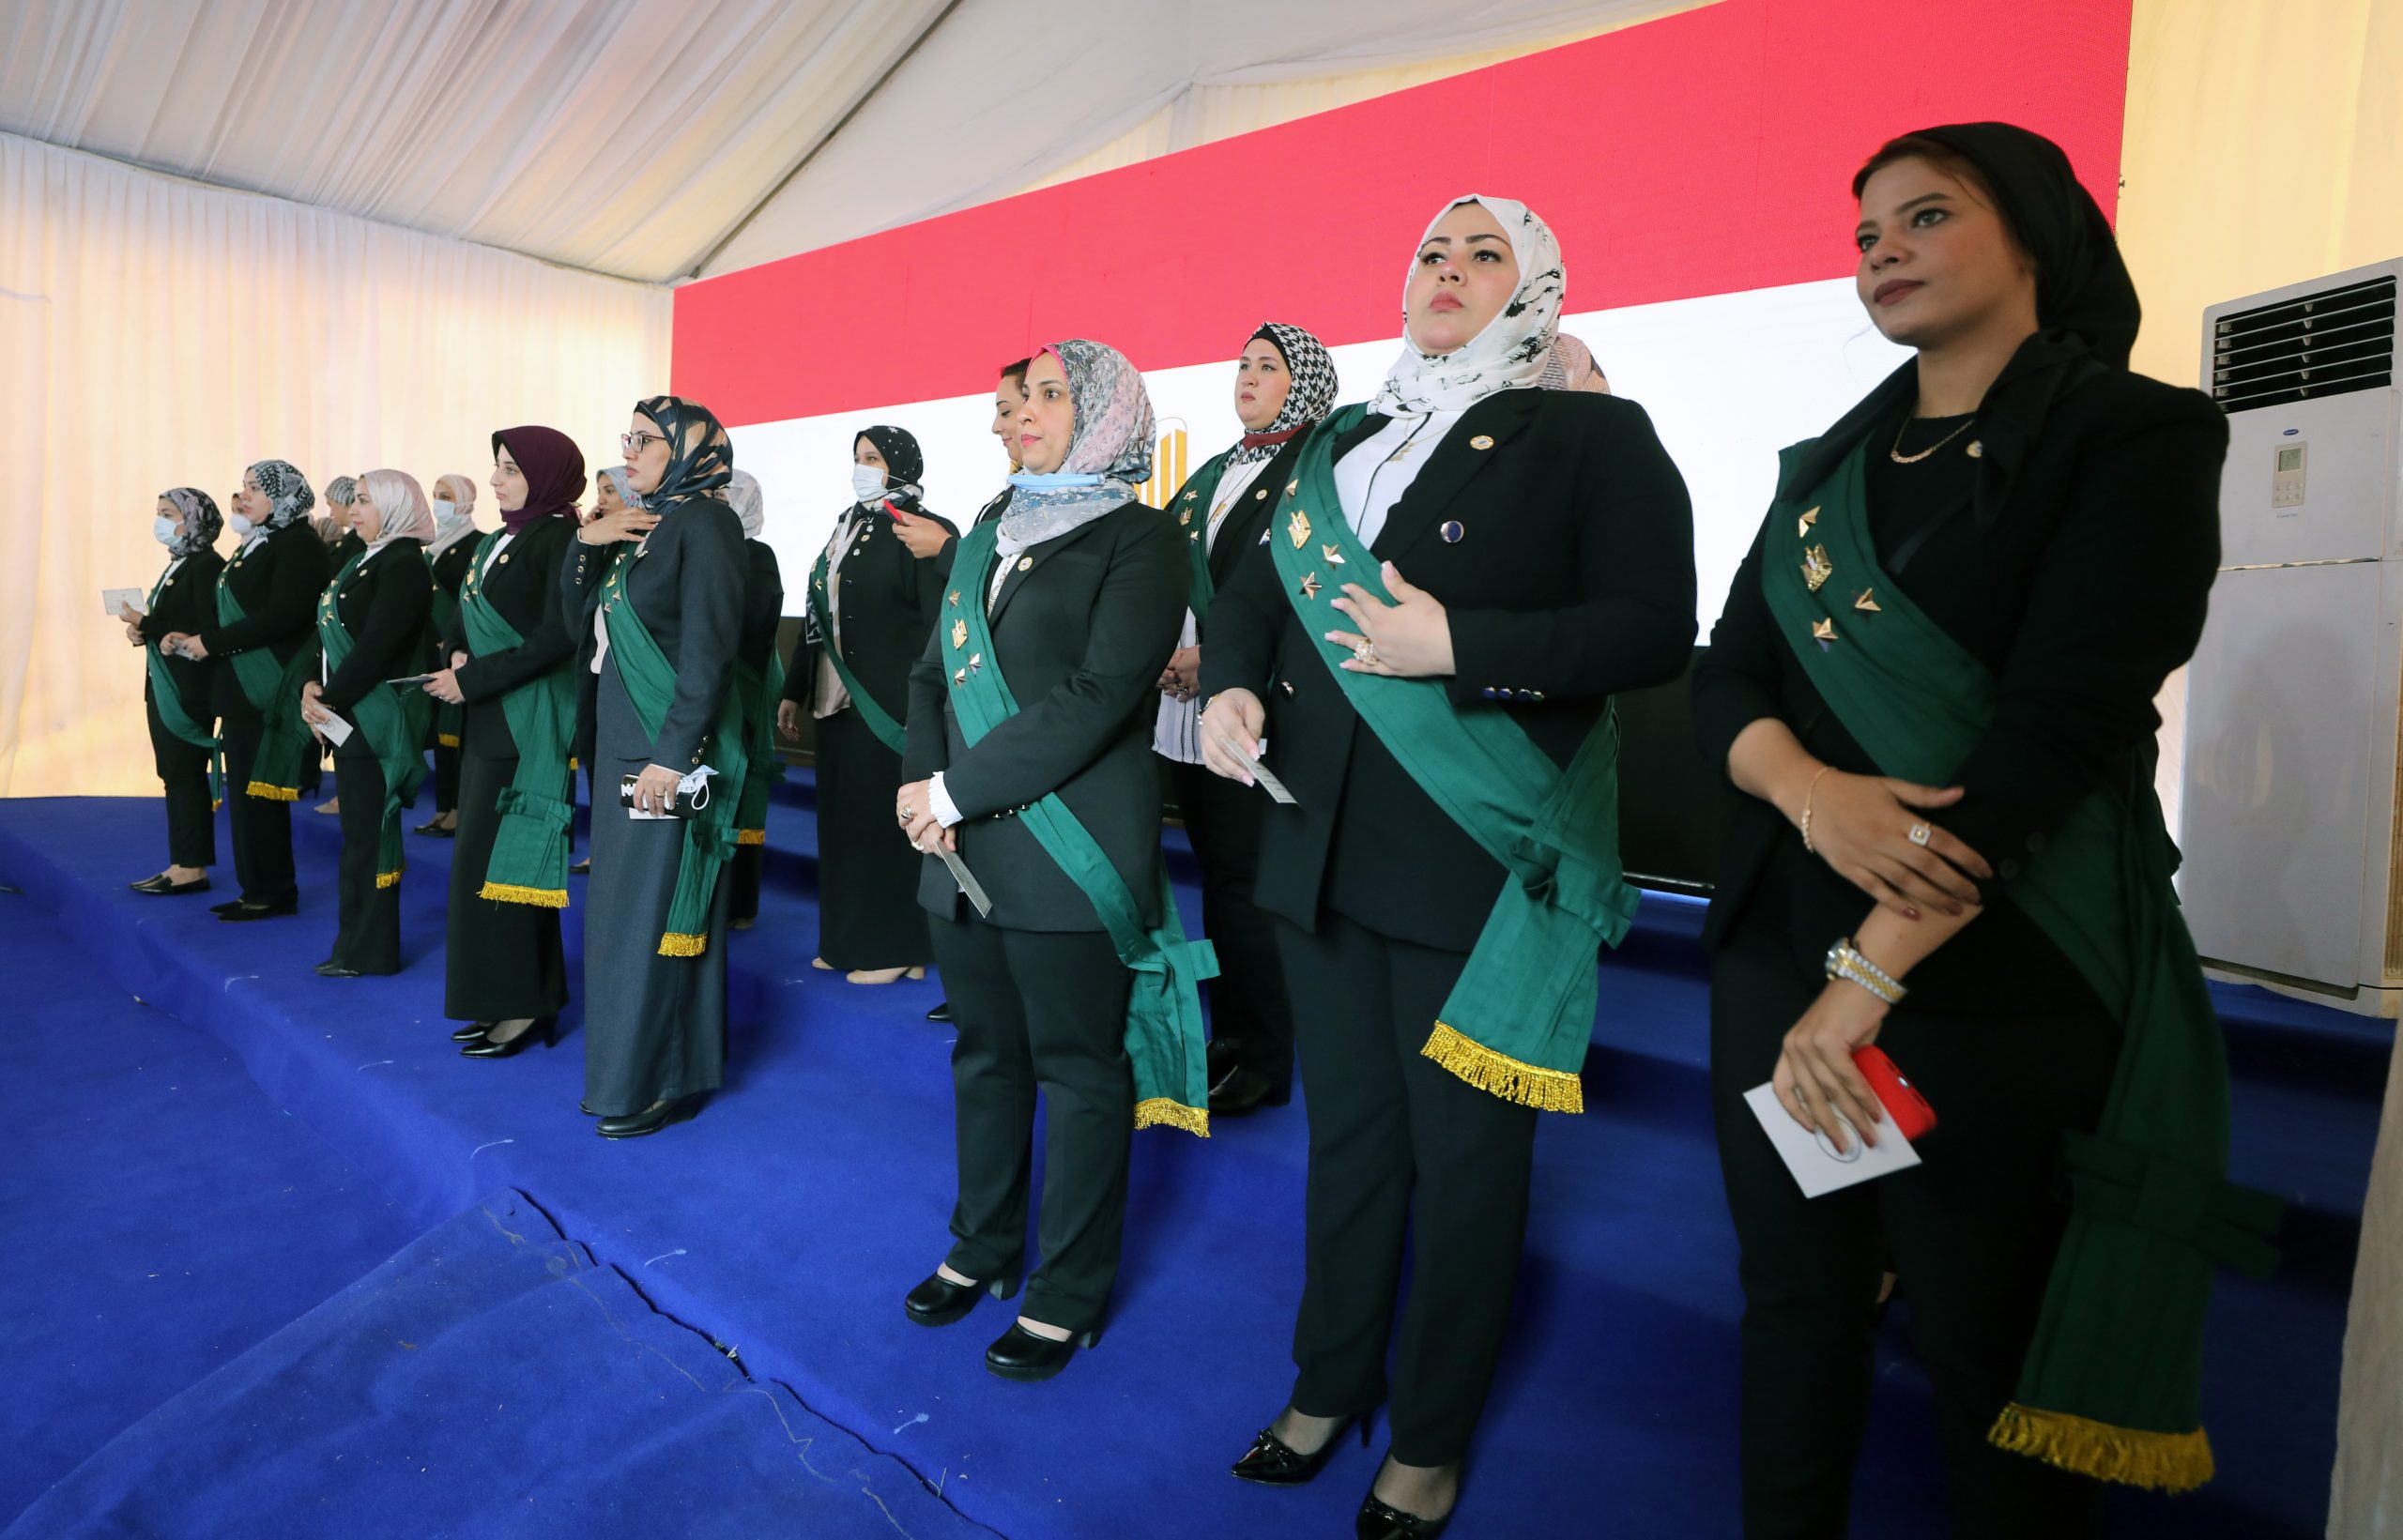 埃及首次任命女法官 98名女性宣誓就职